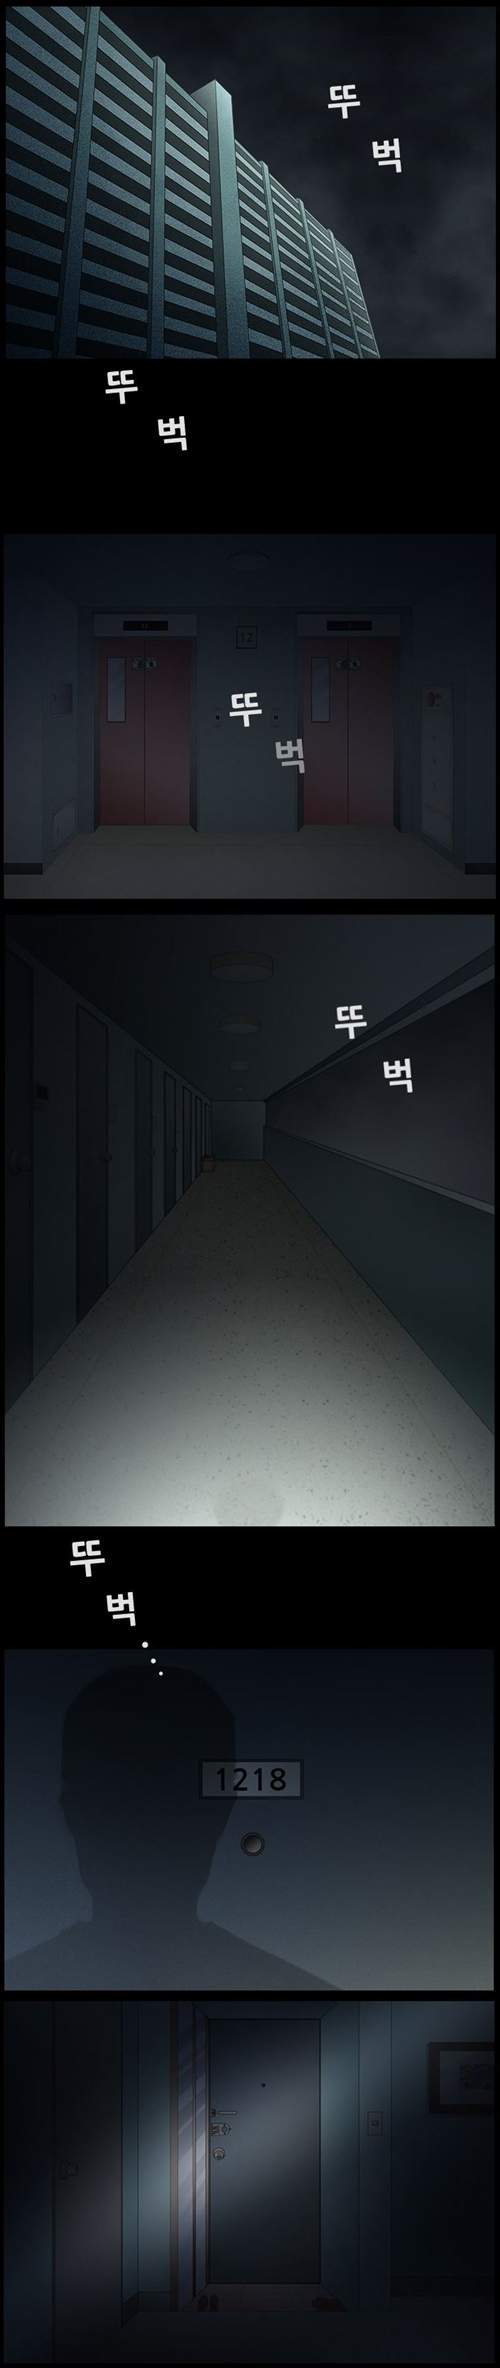 韓國恐怖漫畫《拜訪者》大門沒事記得關好...... - 圖片2